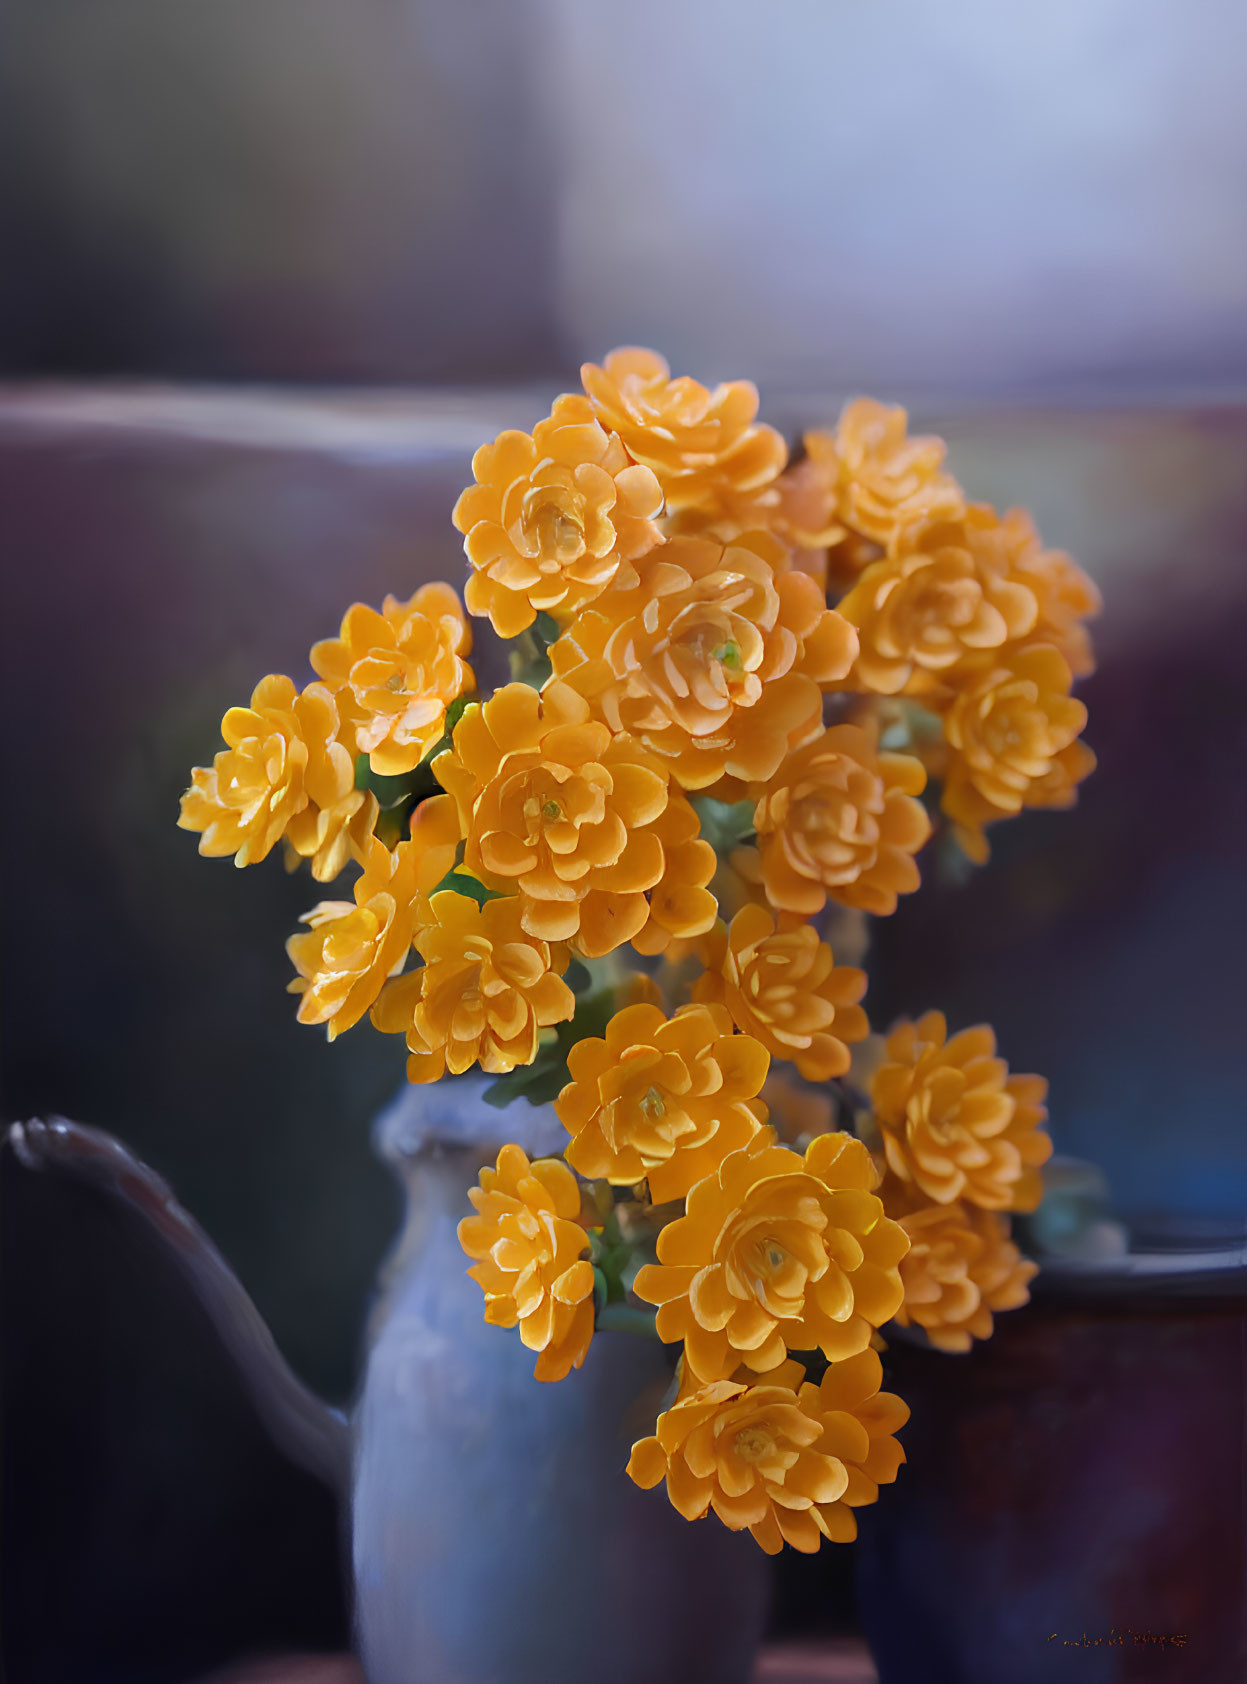 Orange Flowers in Dark Blue Vase on Blurry Background